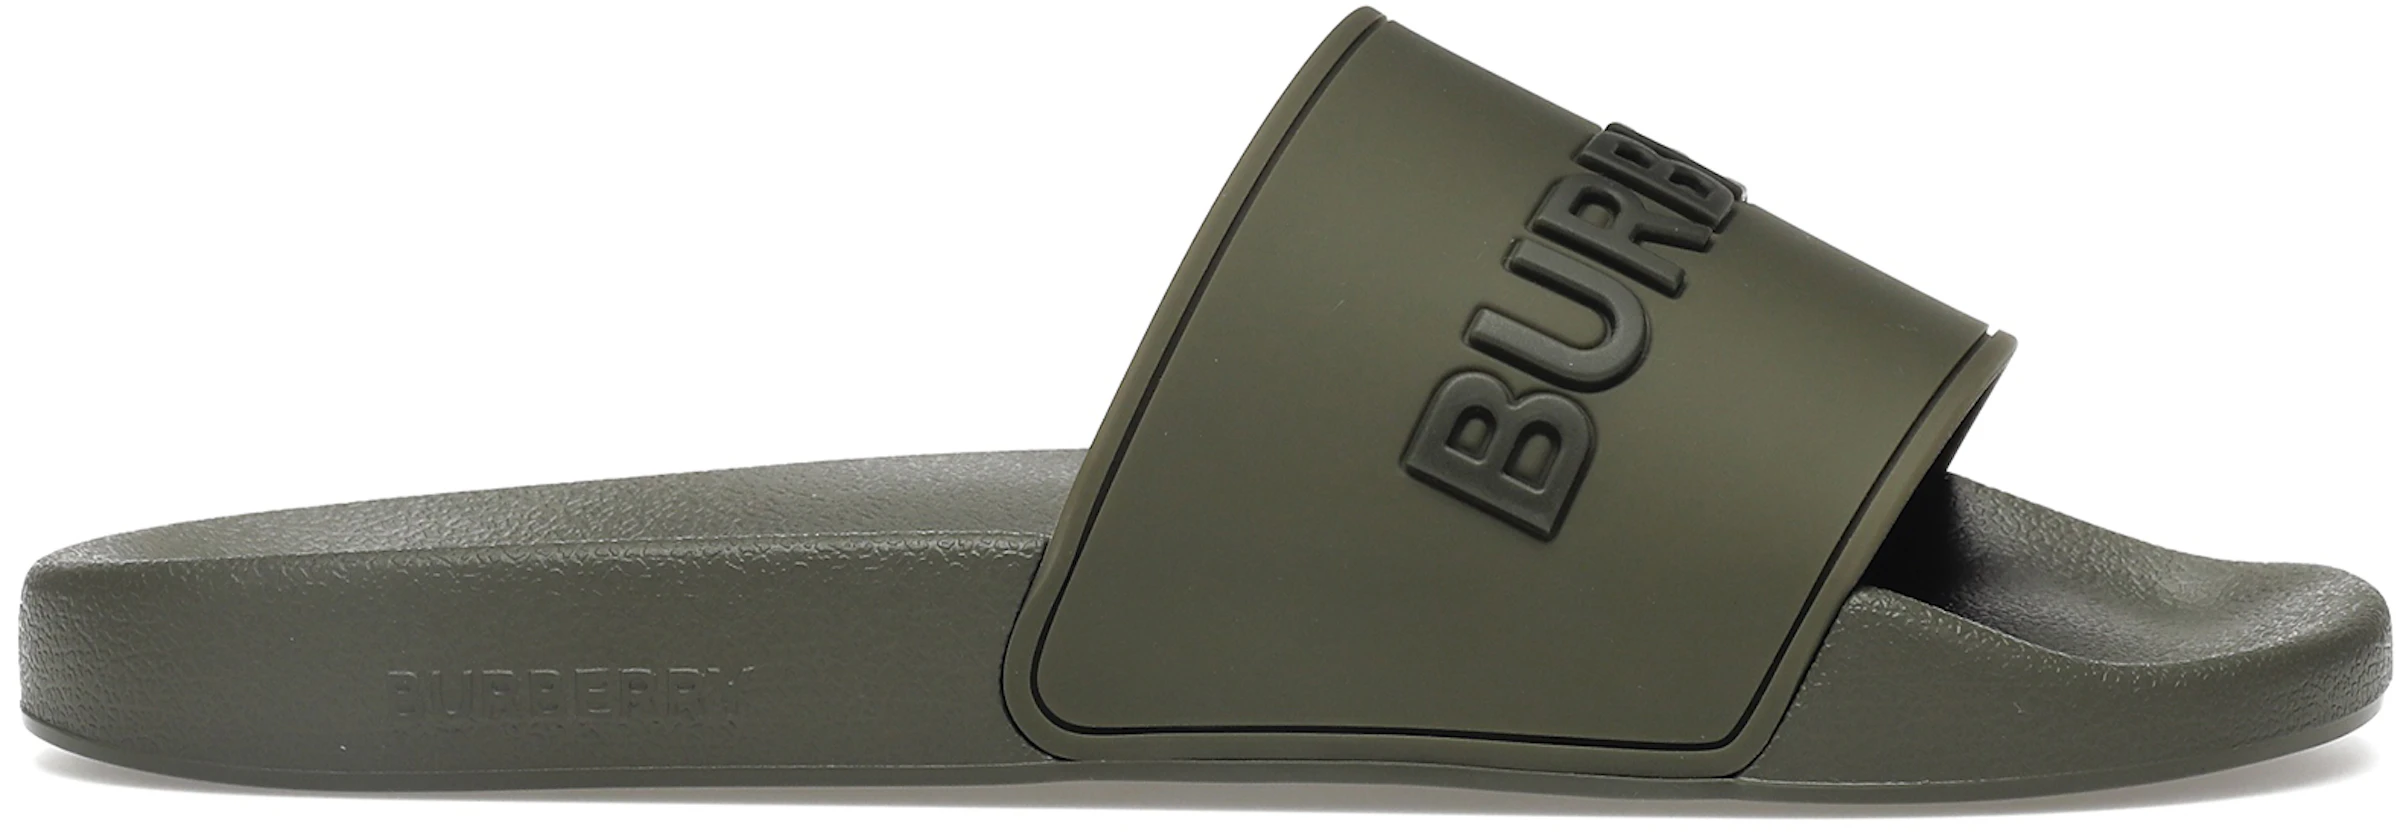 Burberry Embossed Logo Slides Dark Fern Green Black - 8052730 - US